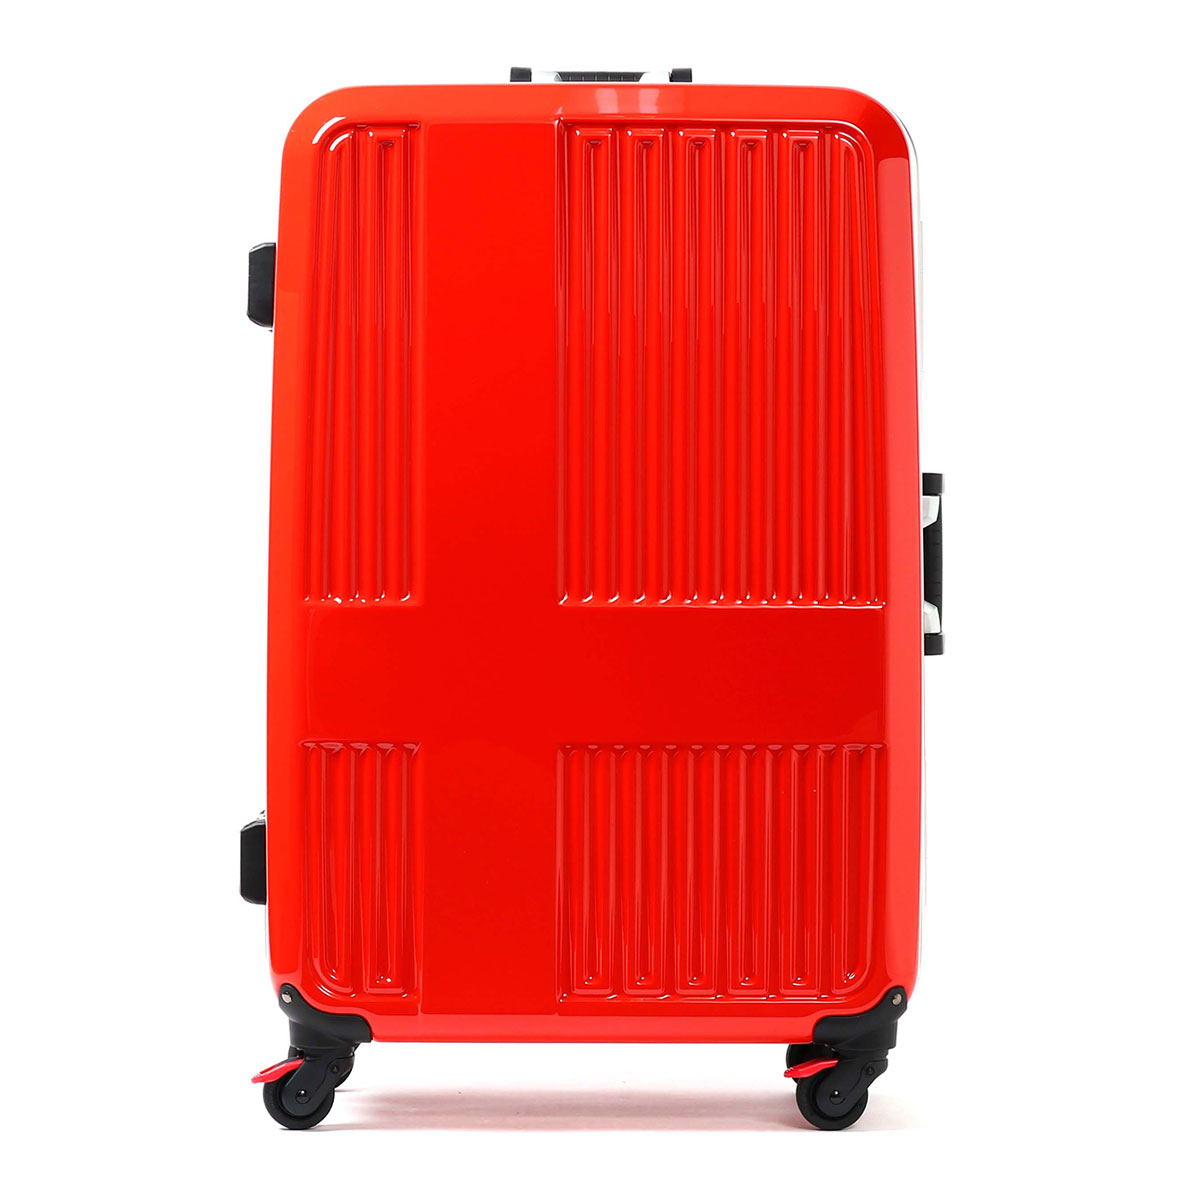 「正規品2年保証」イノベーター スーツケース innovator キャリーケース 10周年アニバーサリーモデル フレームタイプ 4輪 90L 7〜10泊 大型 Lサイズ TSAロック 旅行 ハード INV675